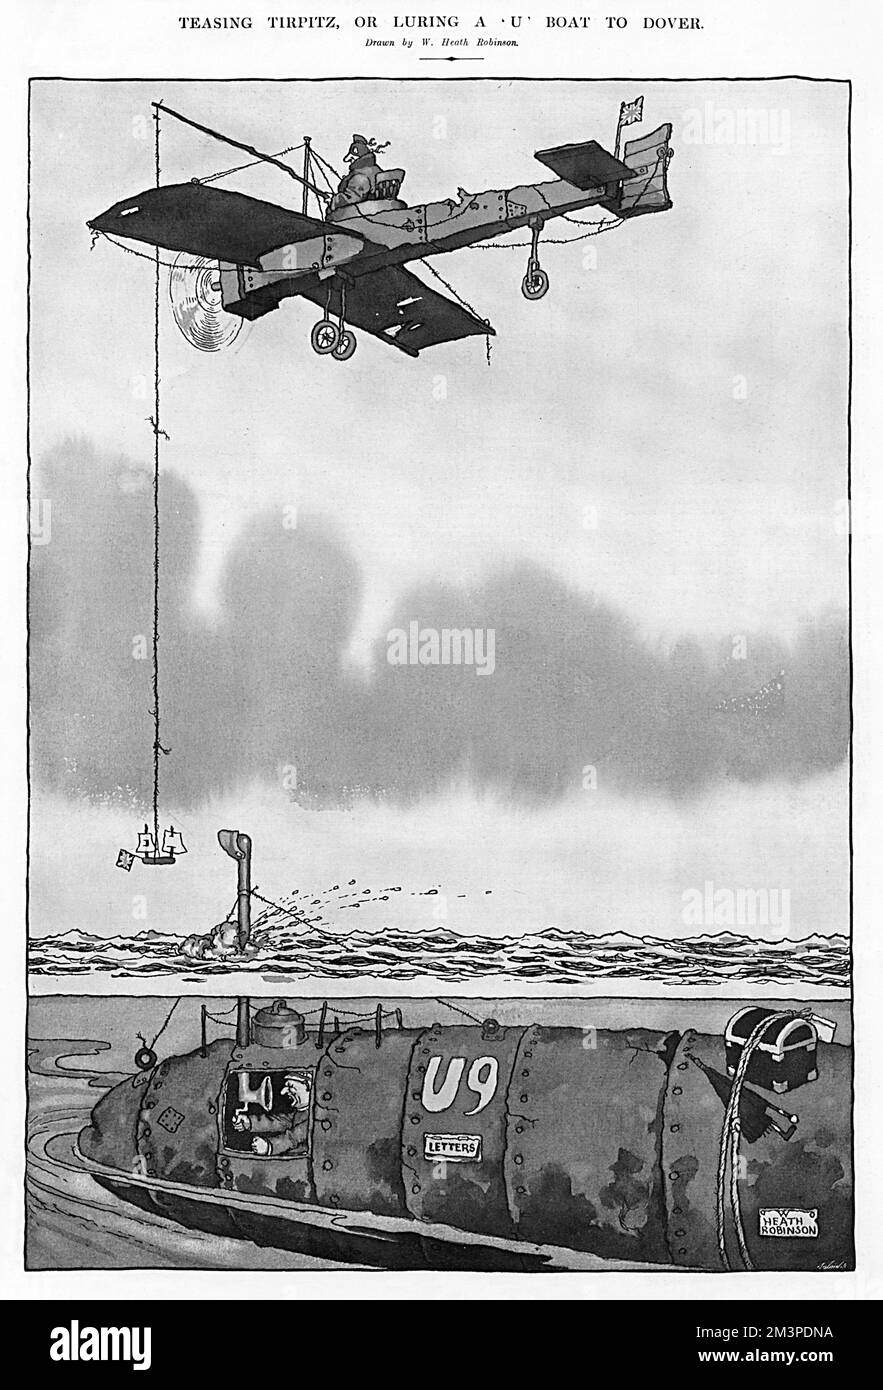 Ein zerschmettertes britisches Flugzeug hängt ein kleines Spielzeugboot an einer Schnur, und treibt ein deutsches U-Boot dazu, es bis nach Dover zu verfolgen. Eine weitere schamlose Kriegstaktik, erdacht von William Heath Robinson. Datum: 1915 Stockfoto